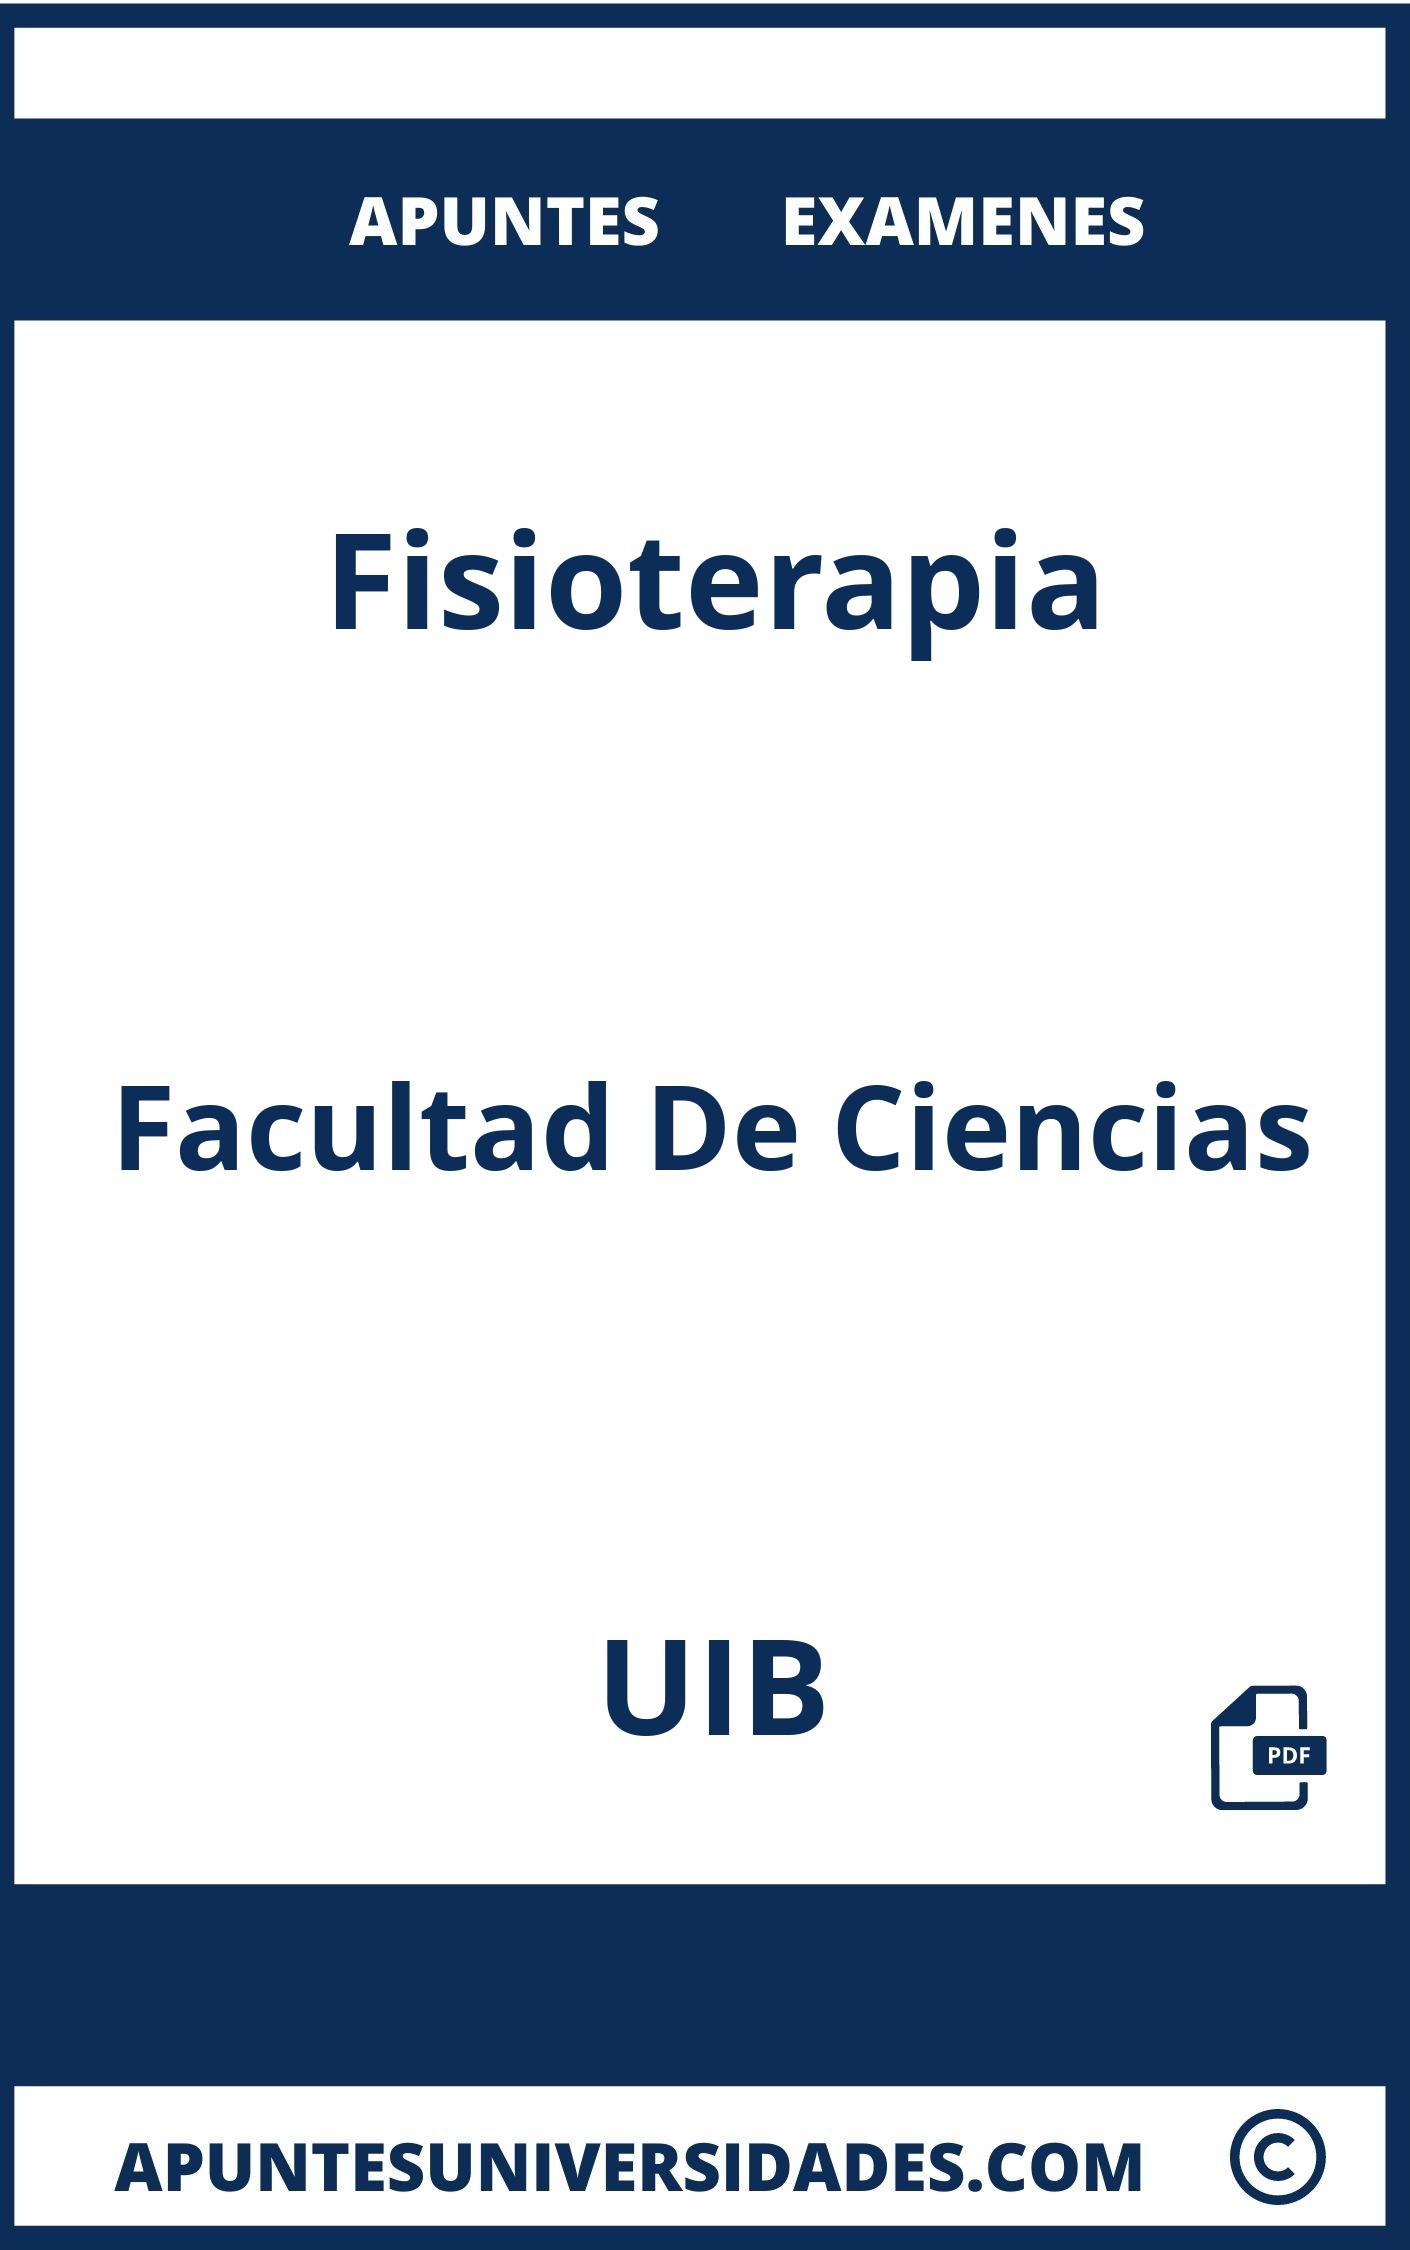 Examenes Fisioterapia UIB y Apuntes